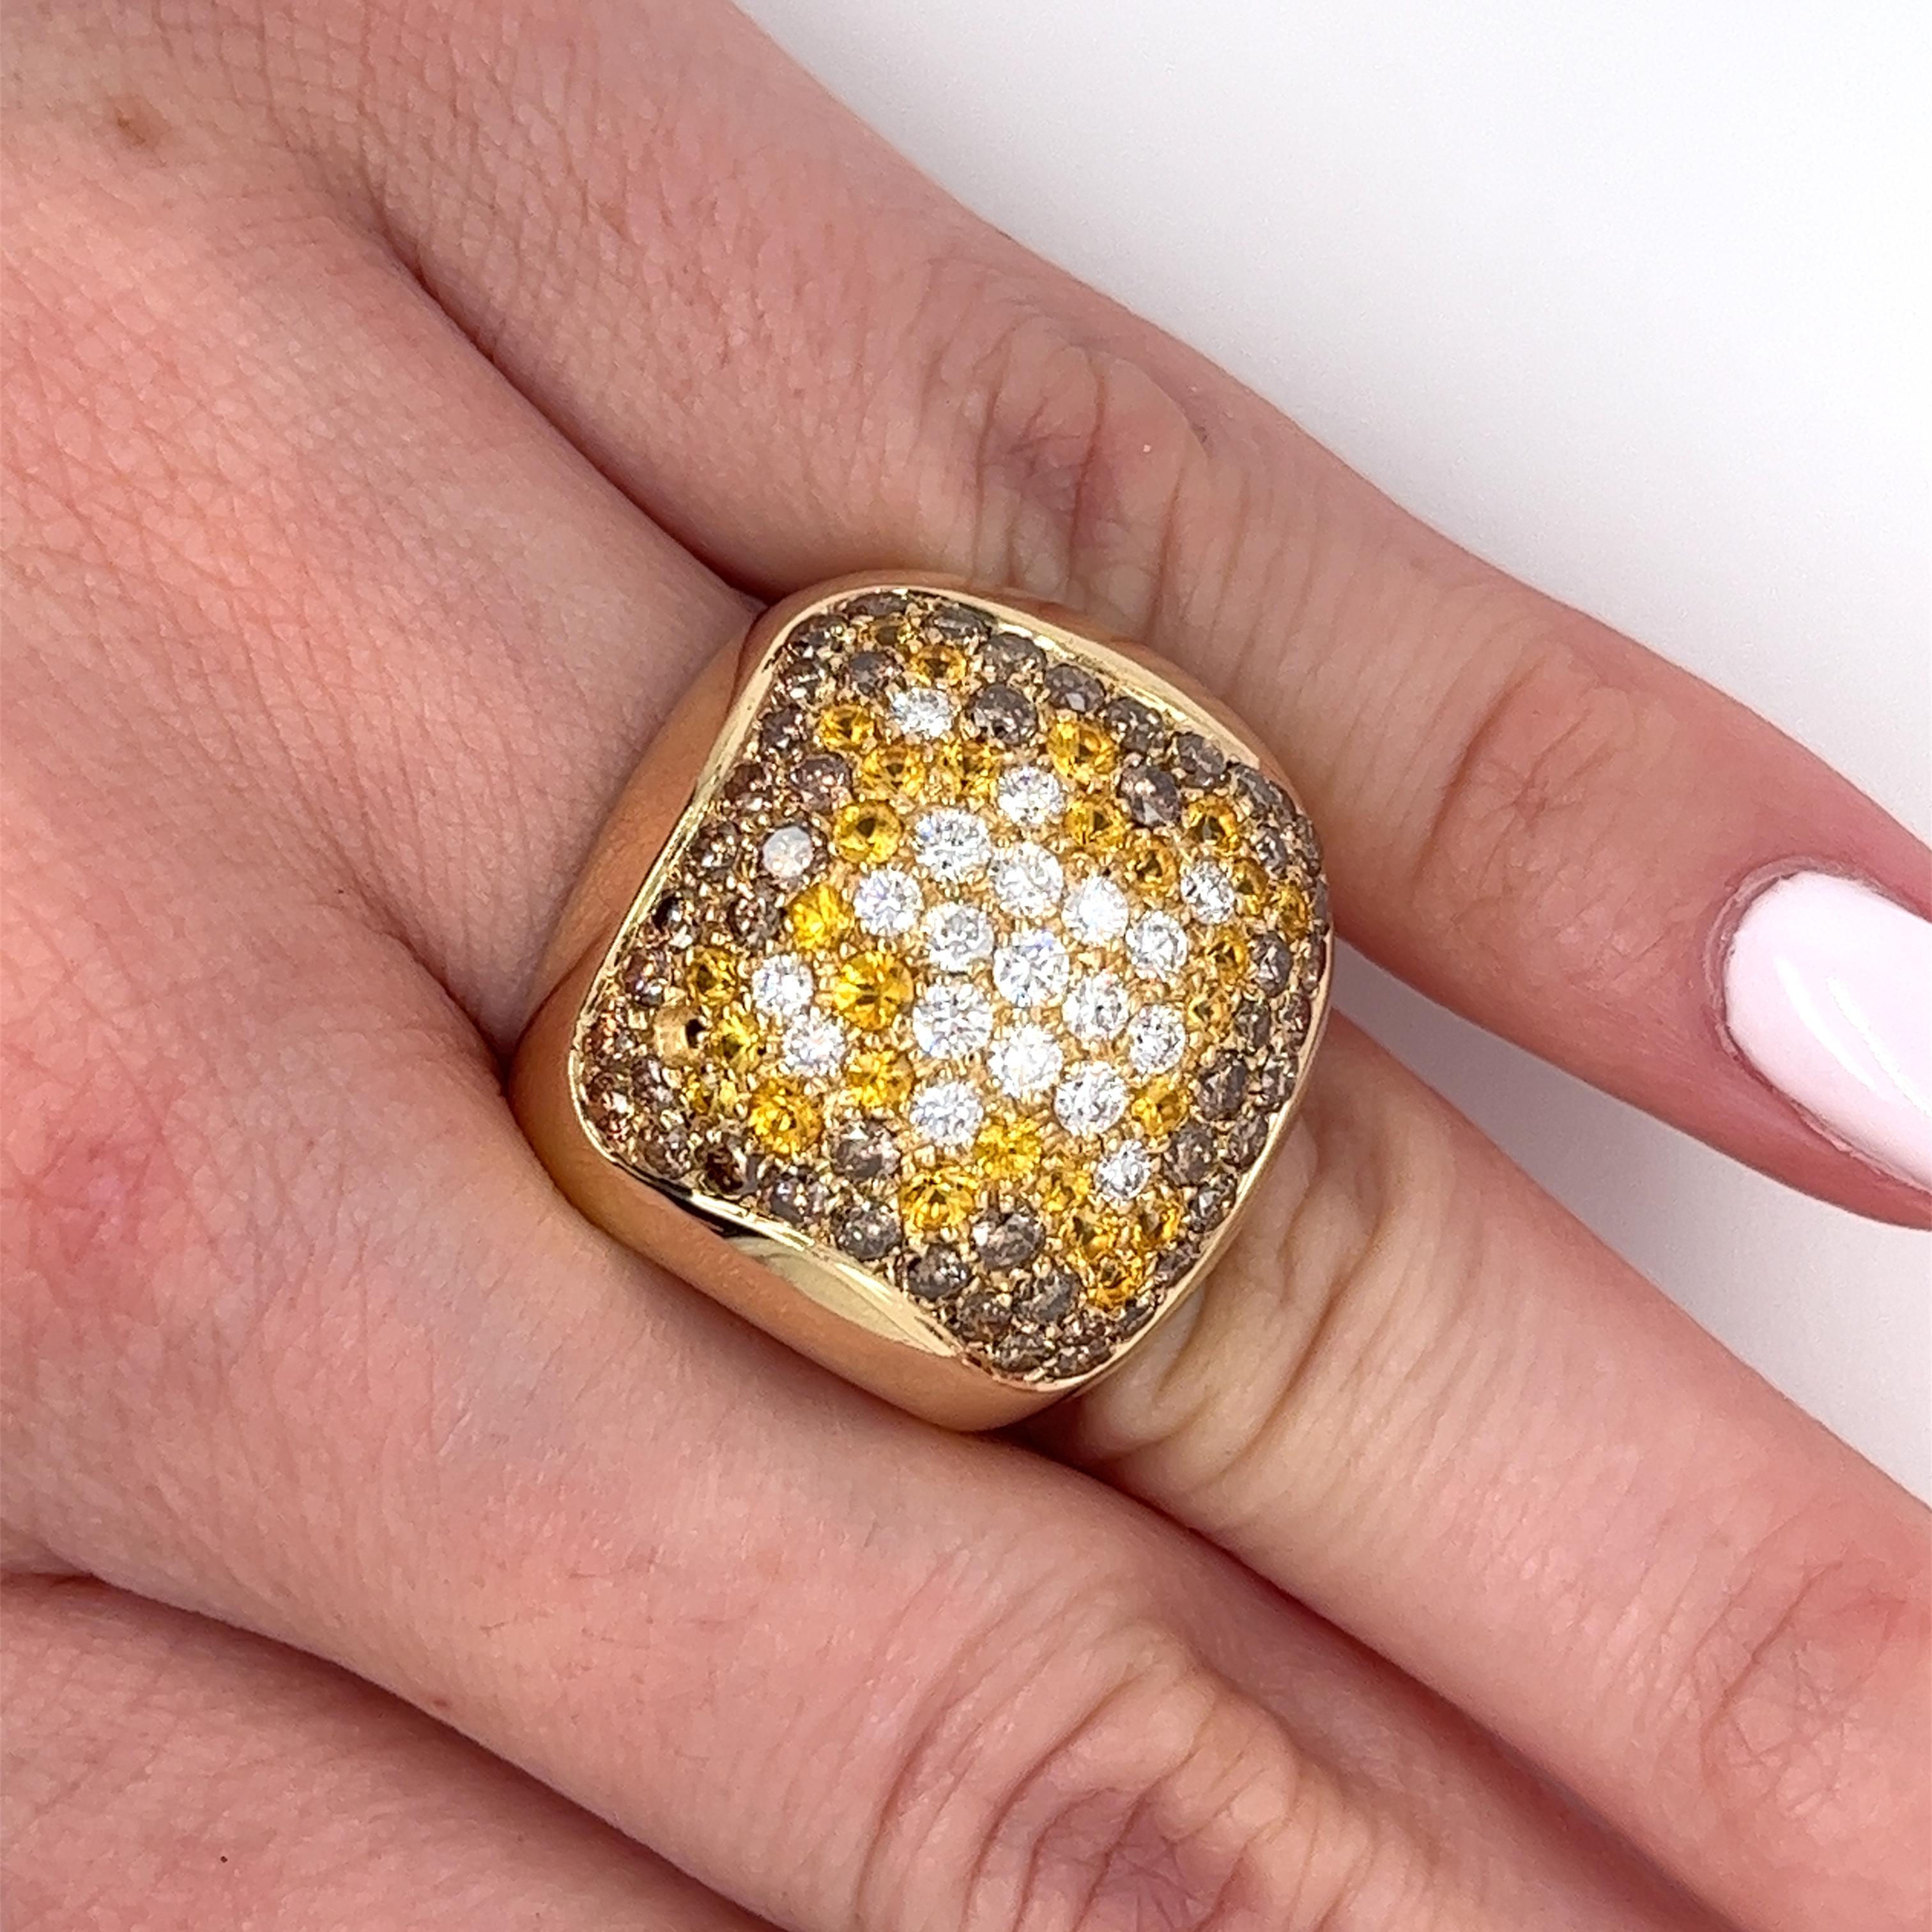 Dieser Ring besteht aus einem Cluster runder weißer und brauner Diamanten im Brillantschliff, die von gelben Saphiren ergänzt werden. Das kuppelförmige Design ist in 14-karätigem Gelbgold mit einem geschwungenen, offenen Ringschaft gefasst. Alle